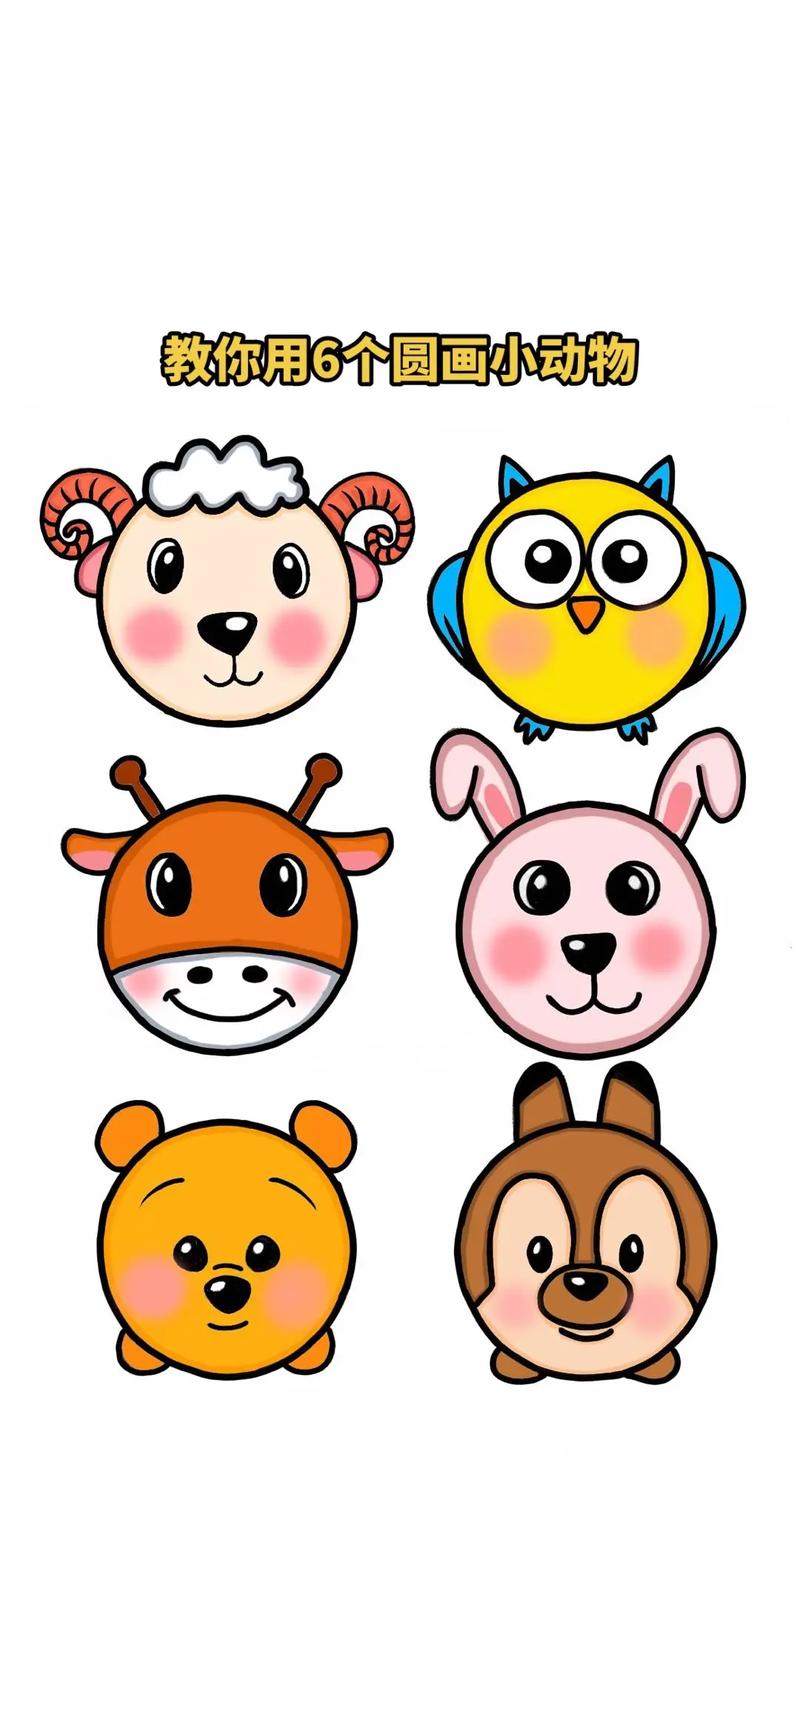 教你用6个圆画出各种小动物#简笔画#小动物#儿童简笔画#动物 - 抖音